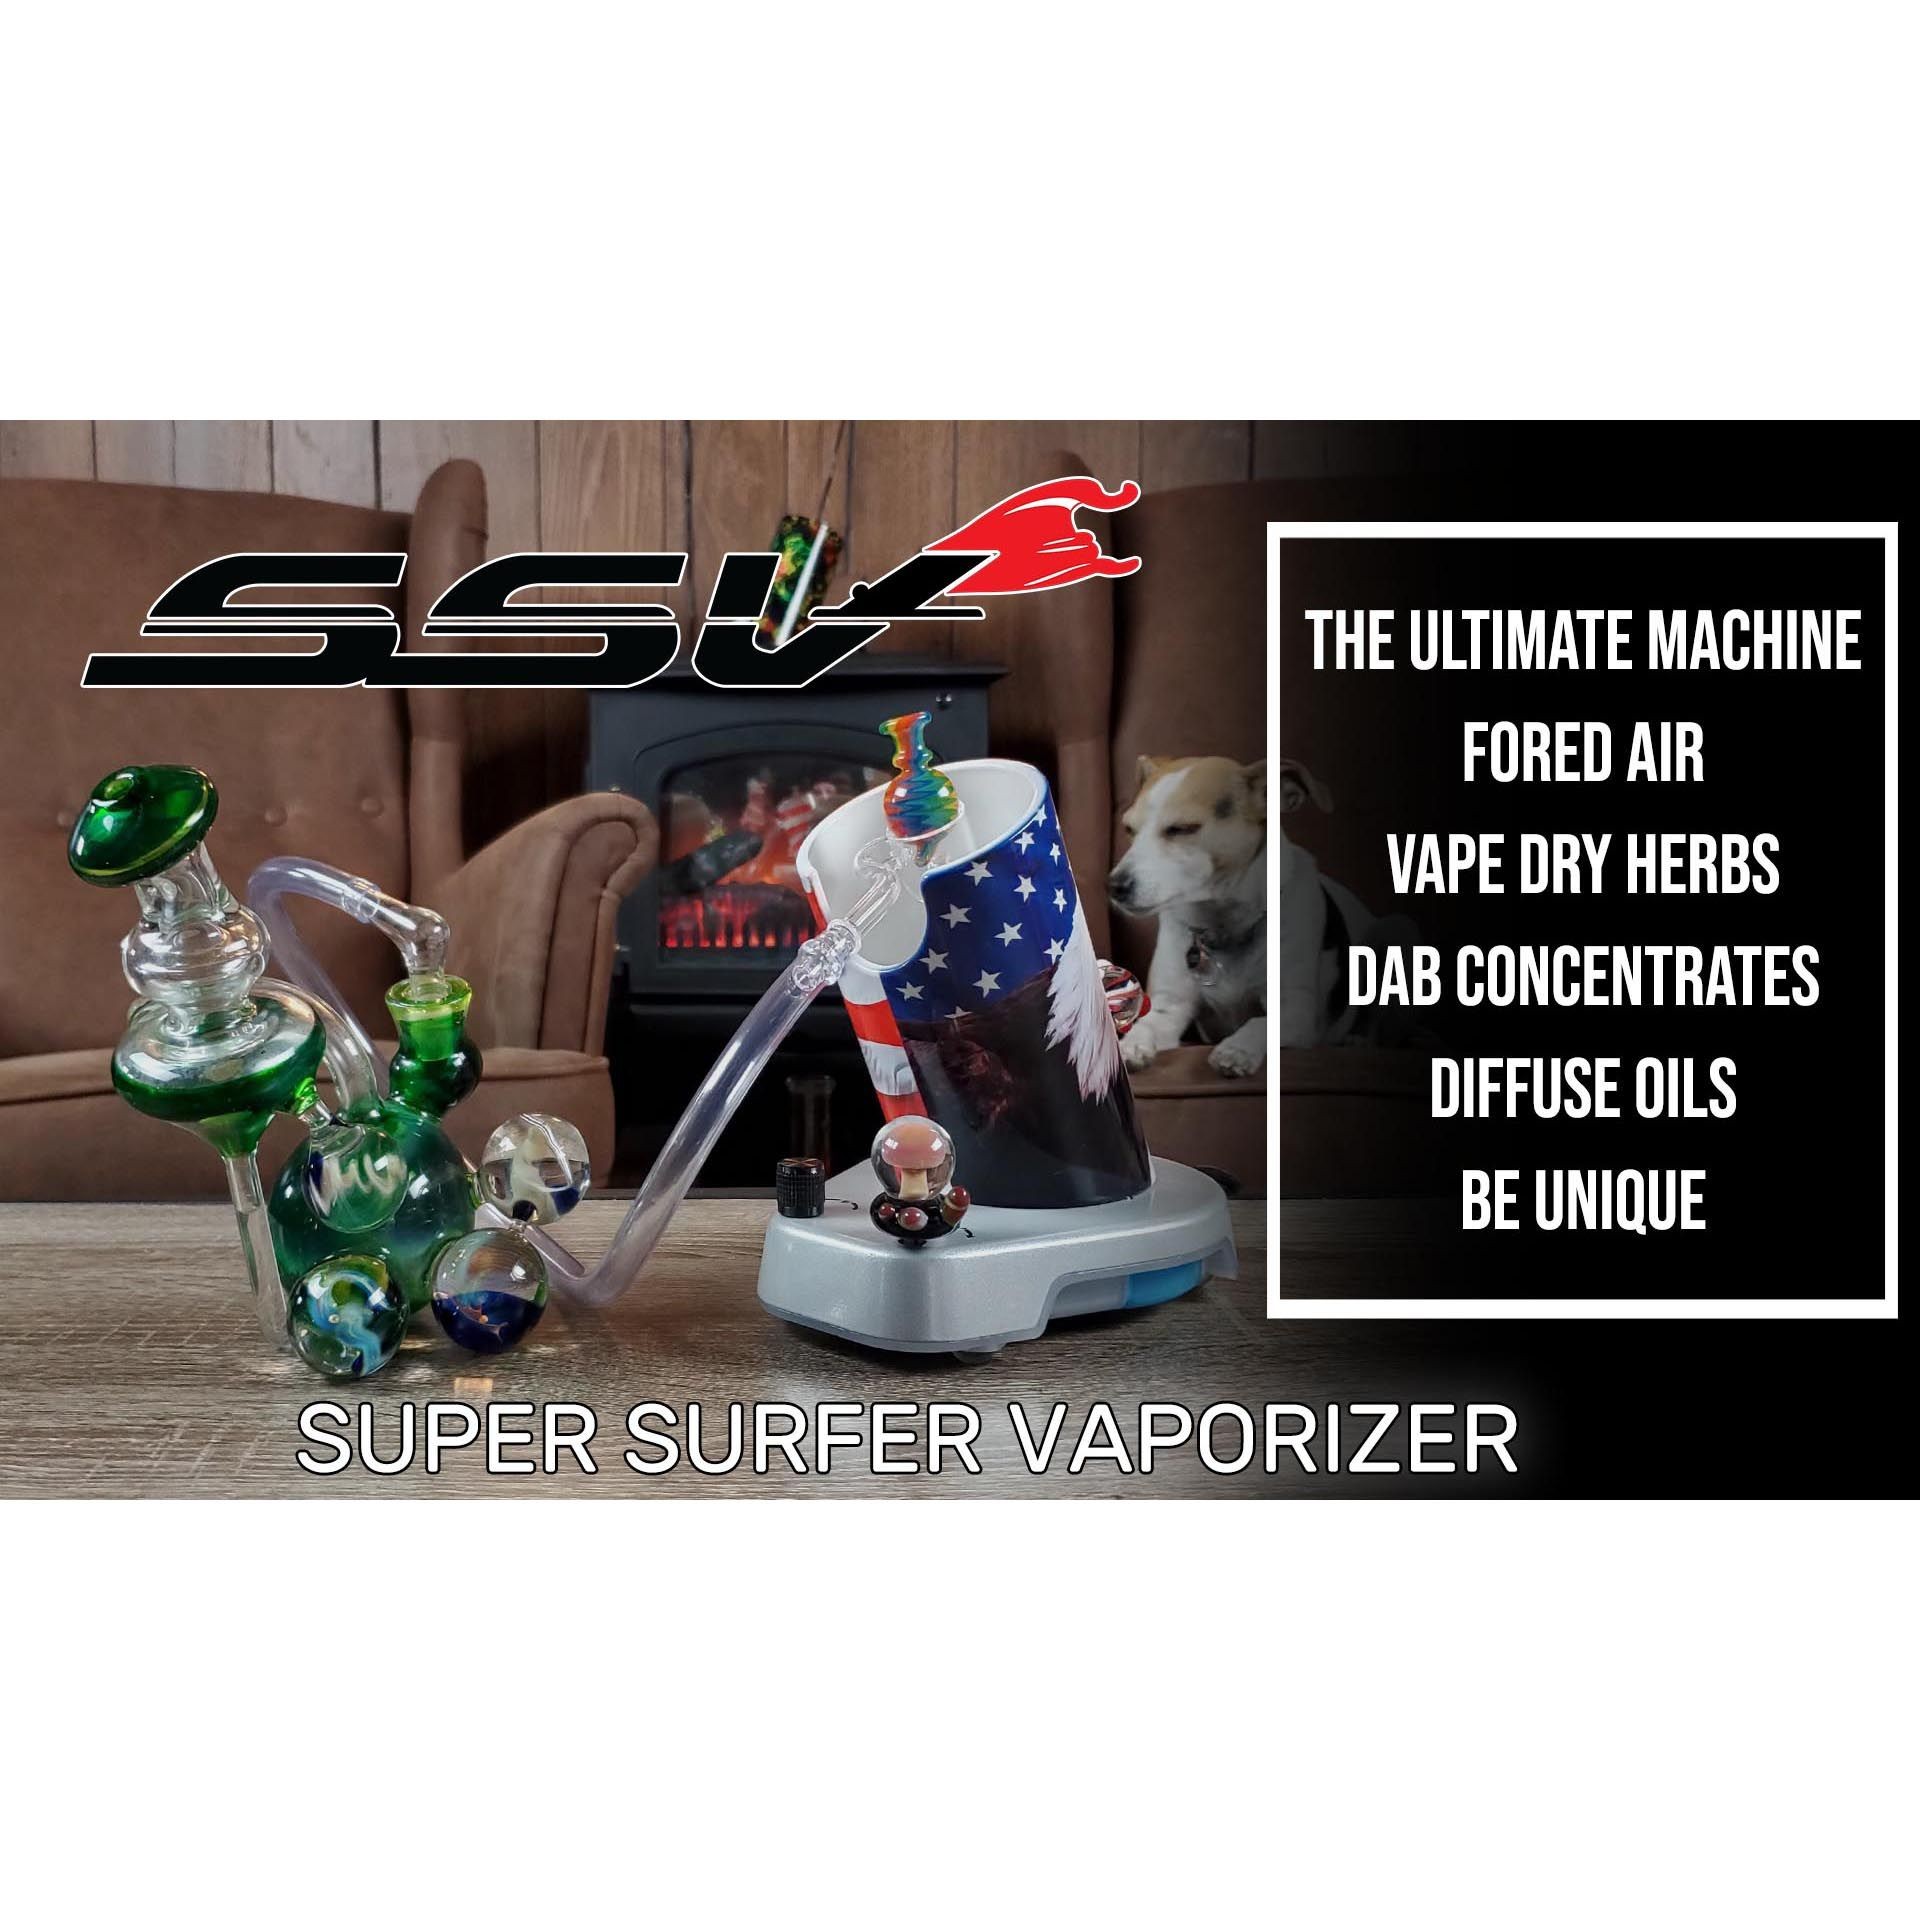 Super Surfer Vaporizer